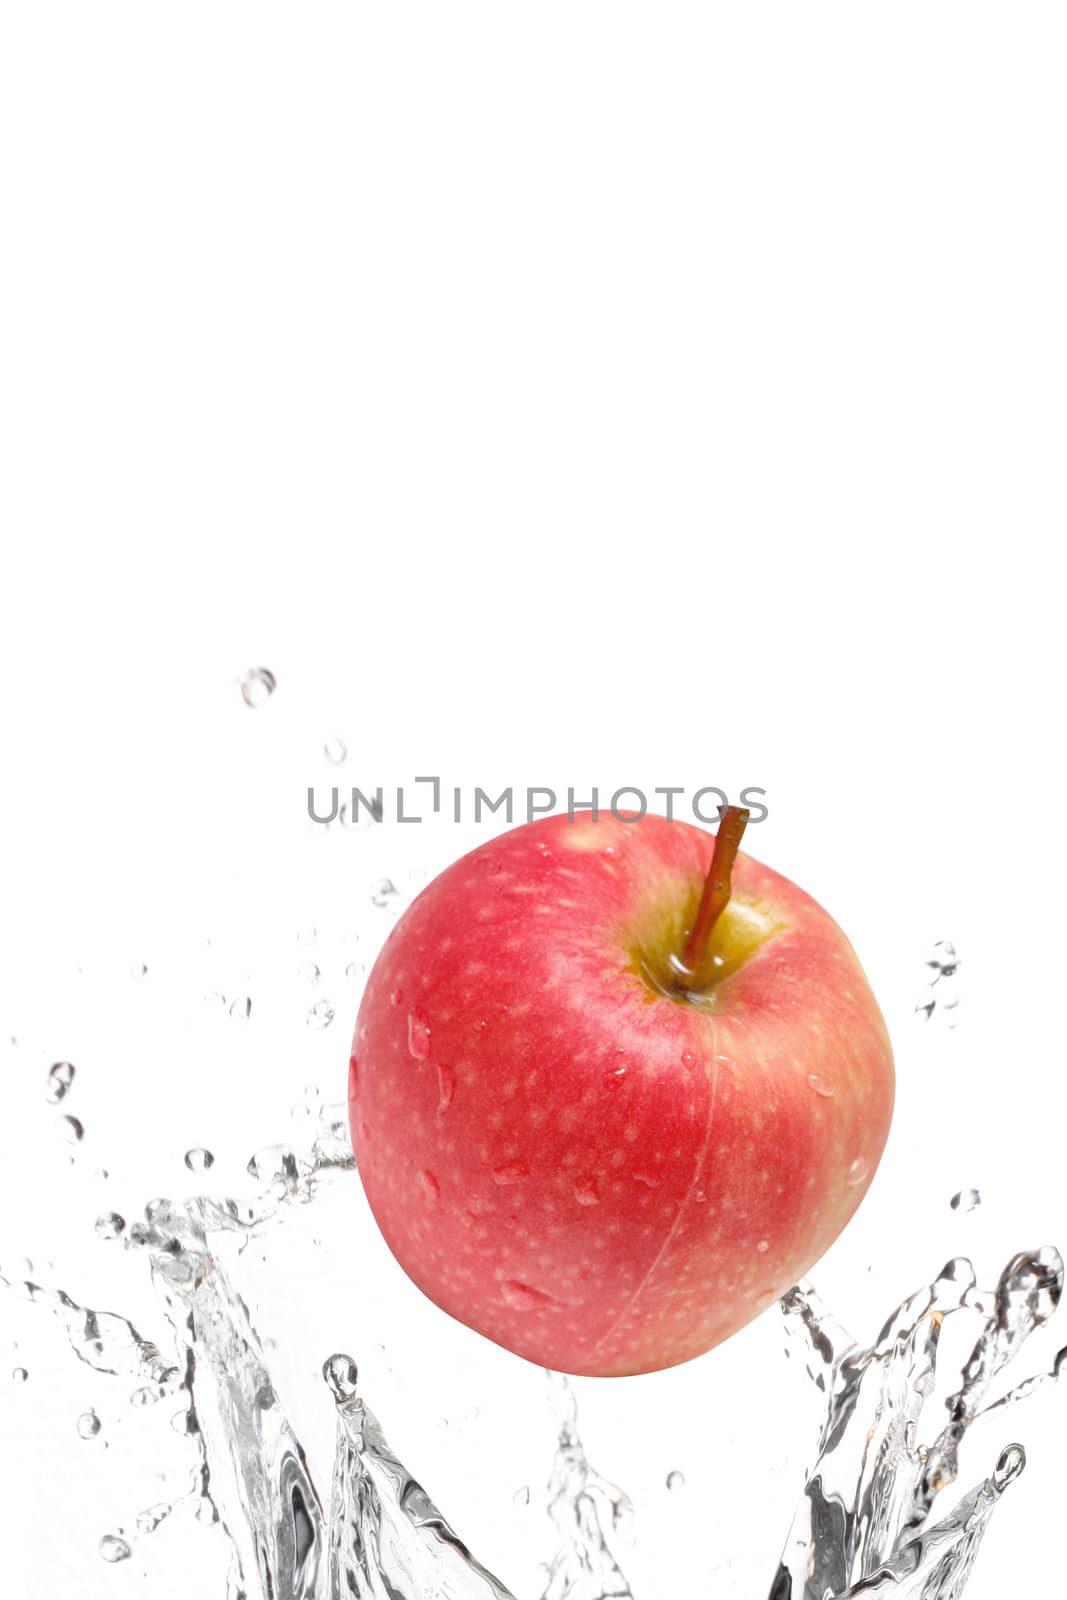 Apple by leeser